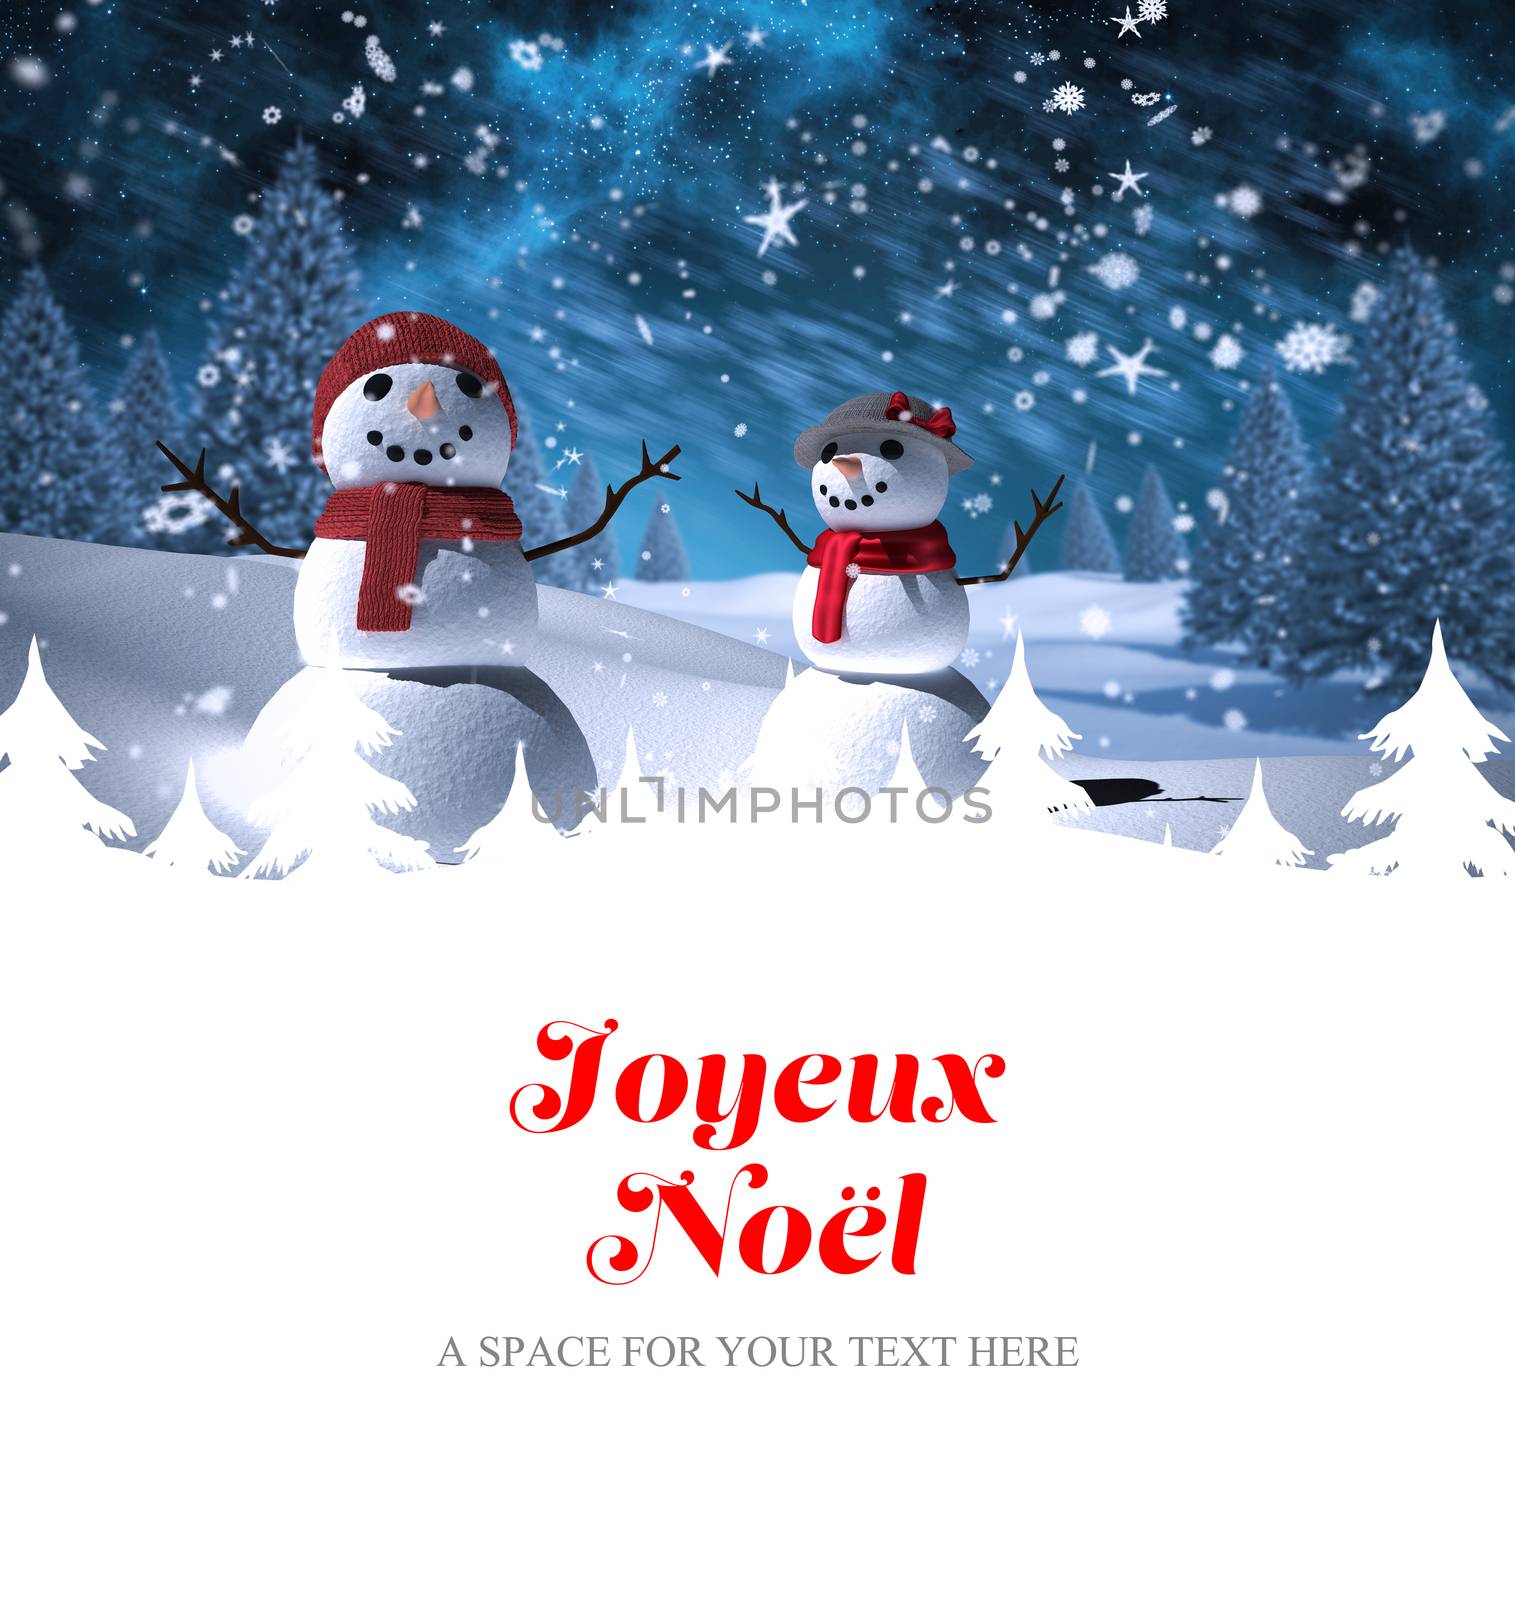 Joyeux noel against snowman family